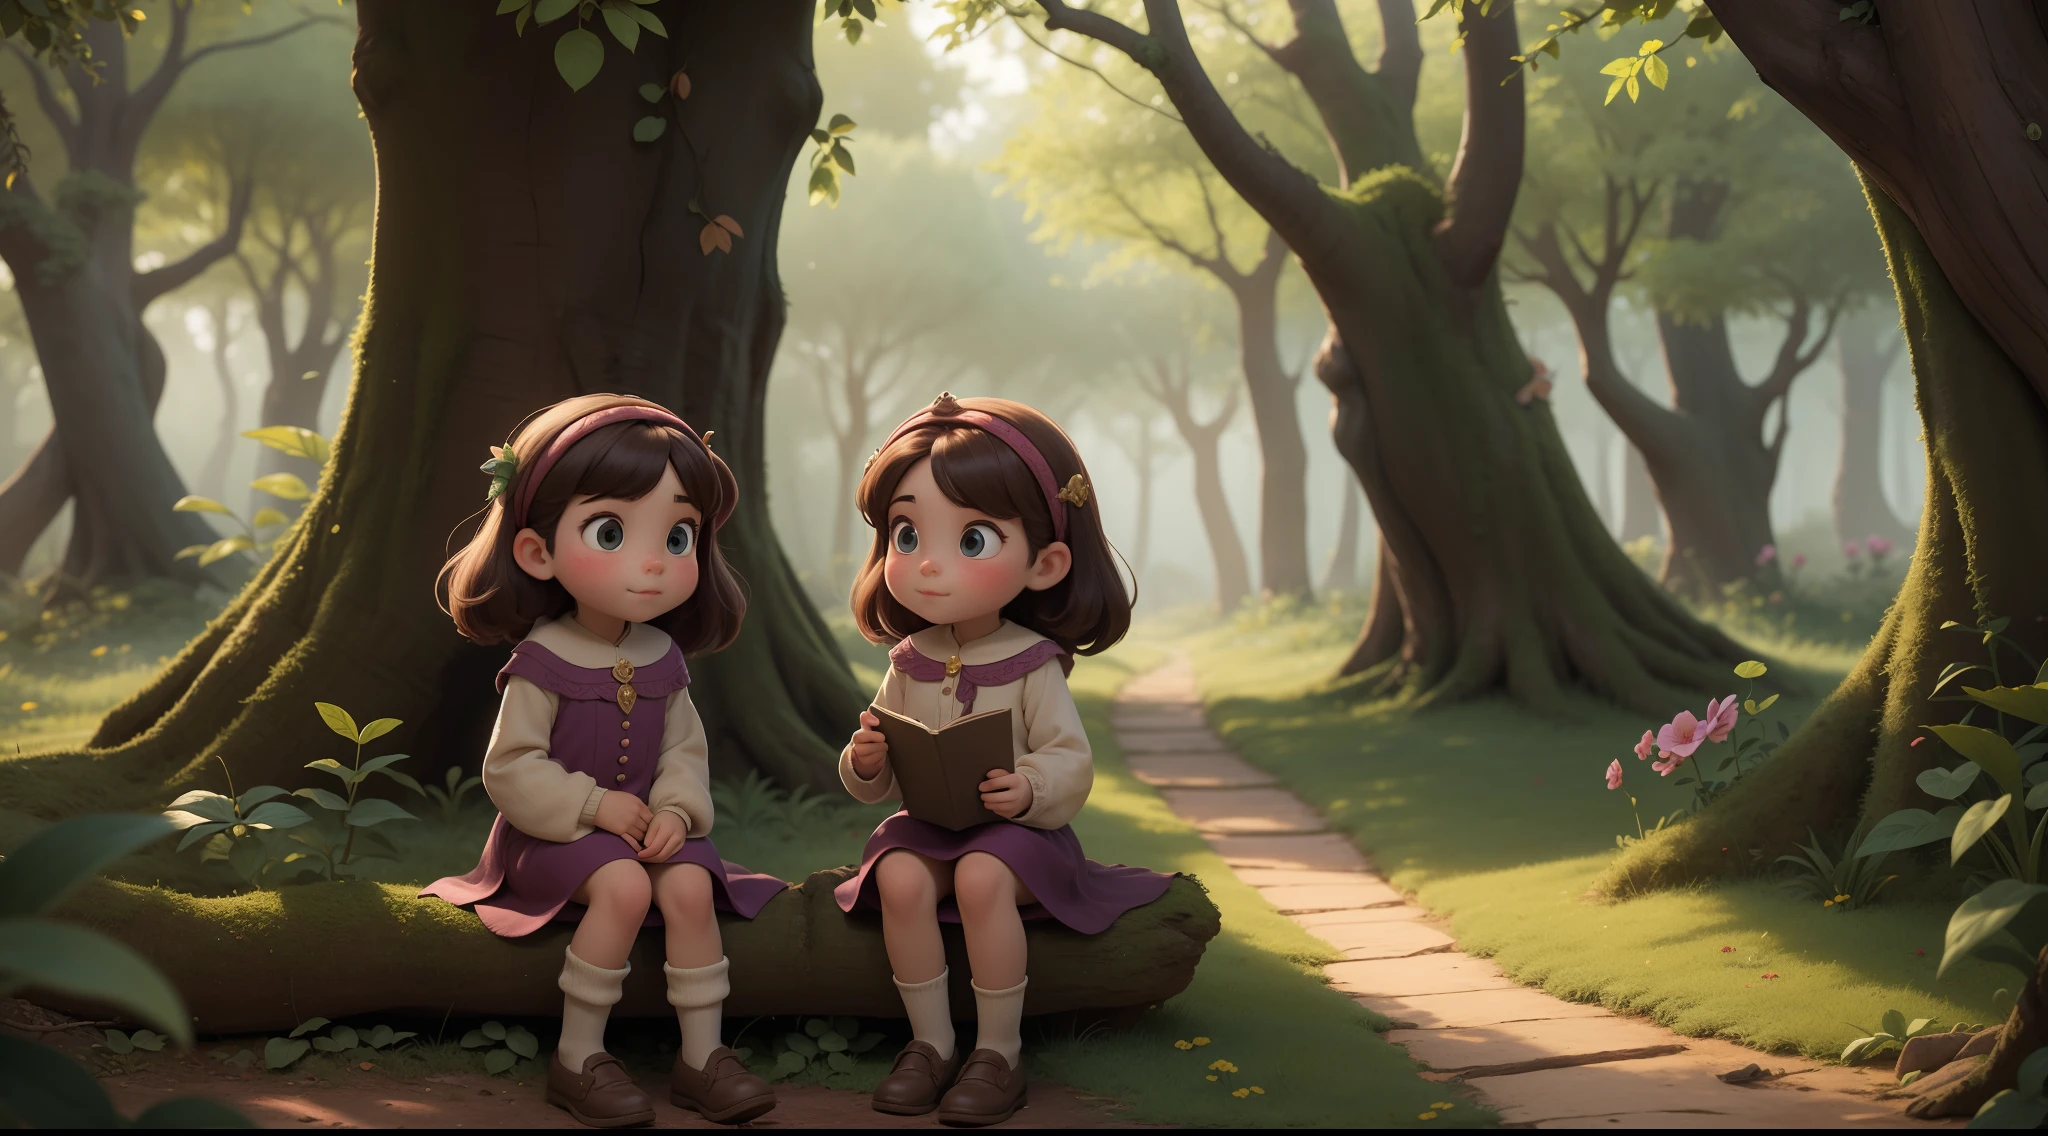 曾几何时, 在一座魔法森林边缘的舒适村庄里, 有一对双胞胎姐妹，分别叫拉拉和伊西. 他们形影不离，喜欢探索家门外森林的神奇秘密.